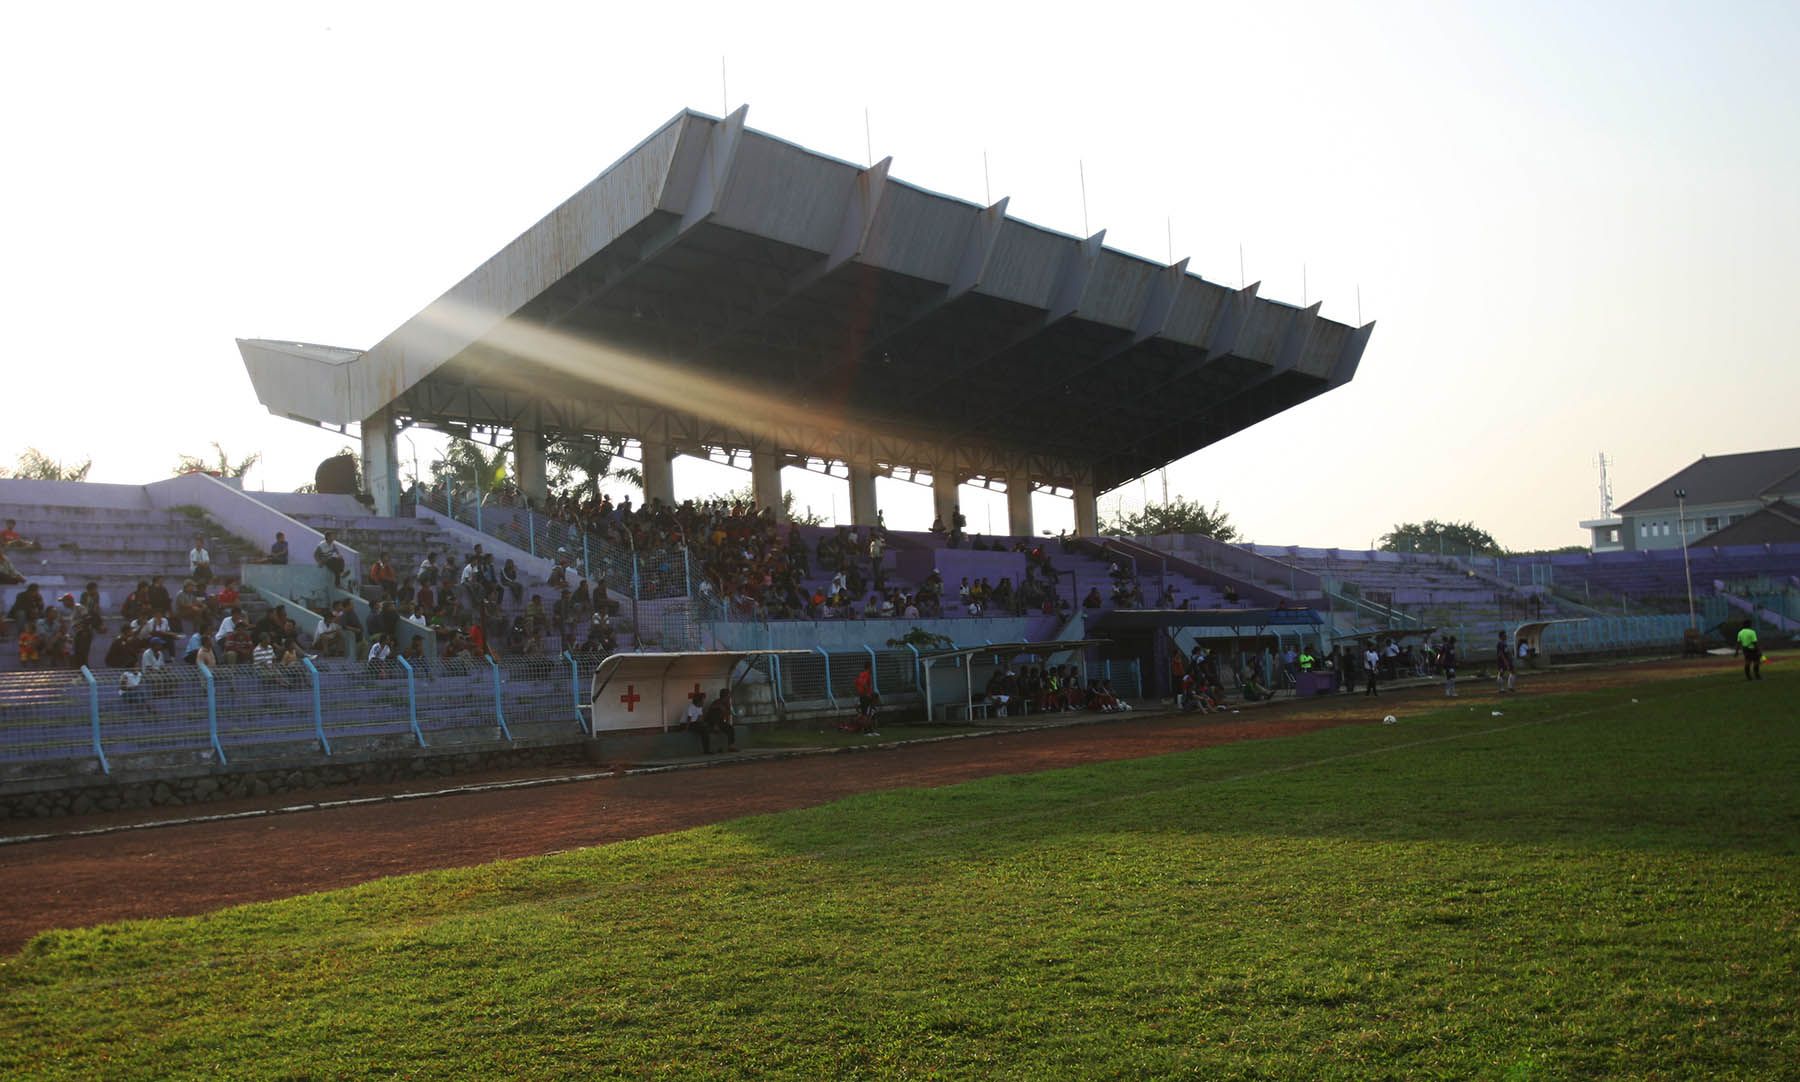 Tampak tribune utama Stadion Benteng Tangerang, yang adalah markas Persita dan Persikota pada masa lalu. Stadion ini punya banyak kisah termasuk saksi bisu fatwa haram sepak bola Tangerang.